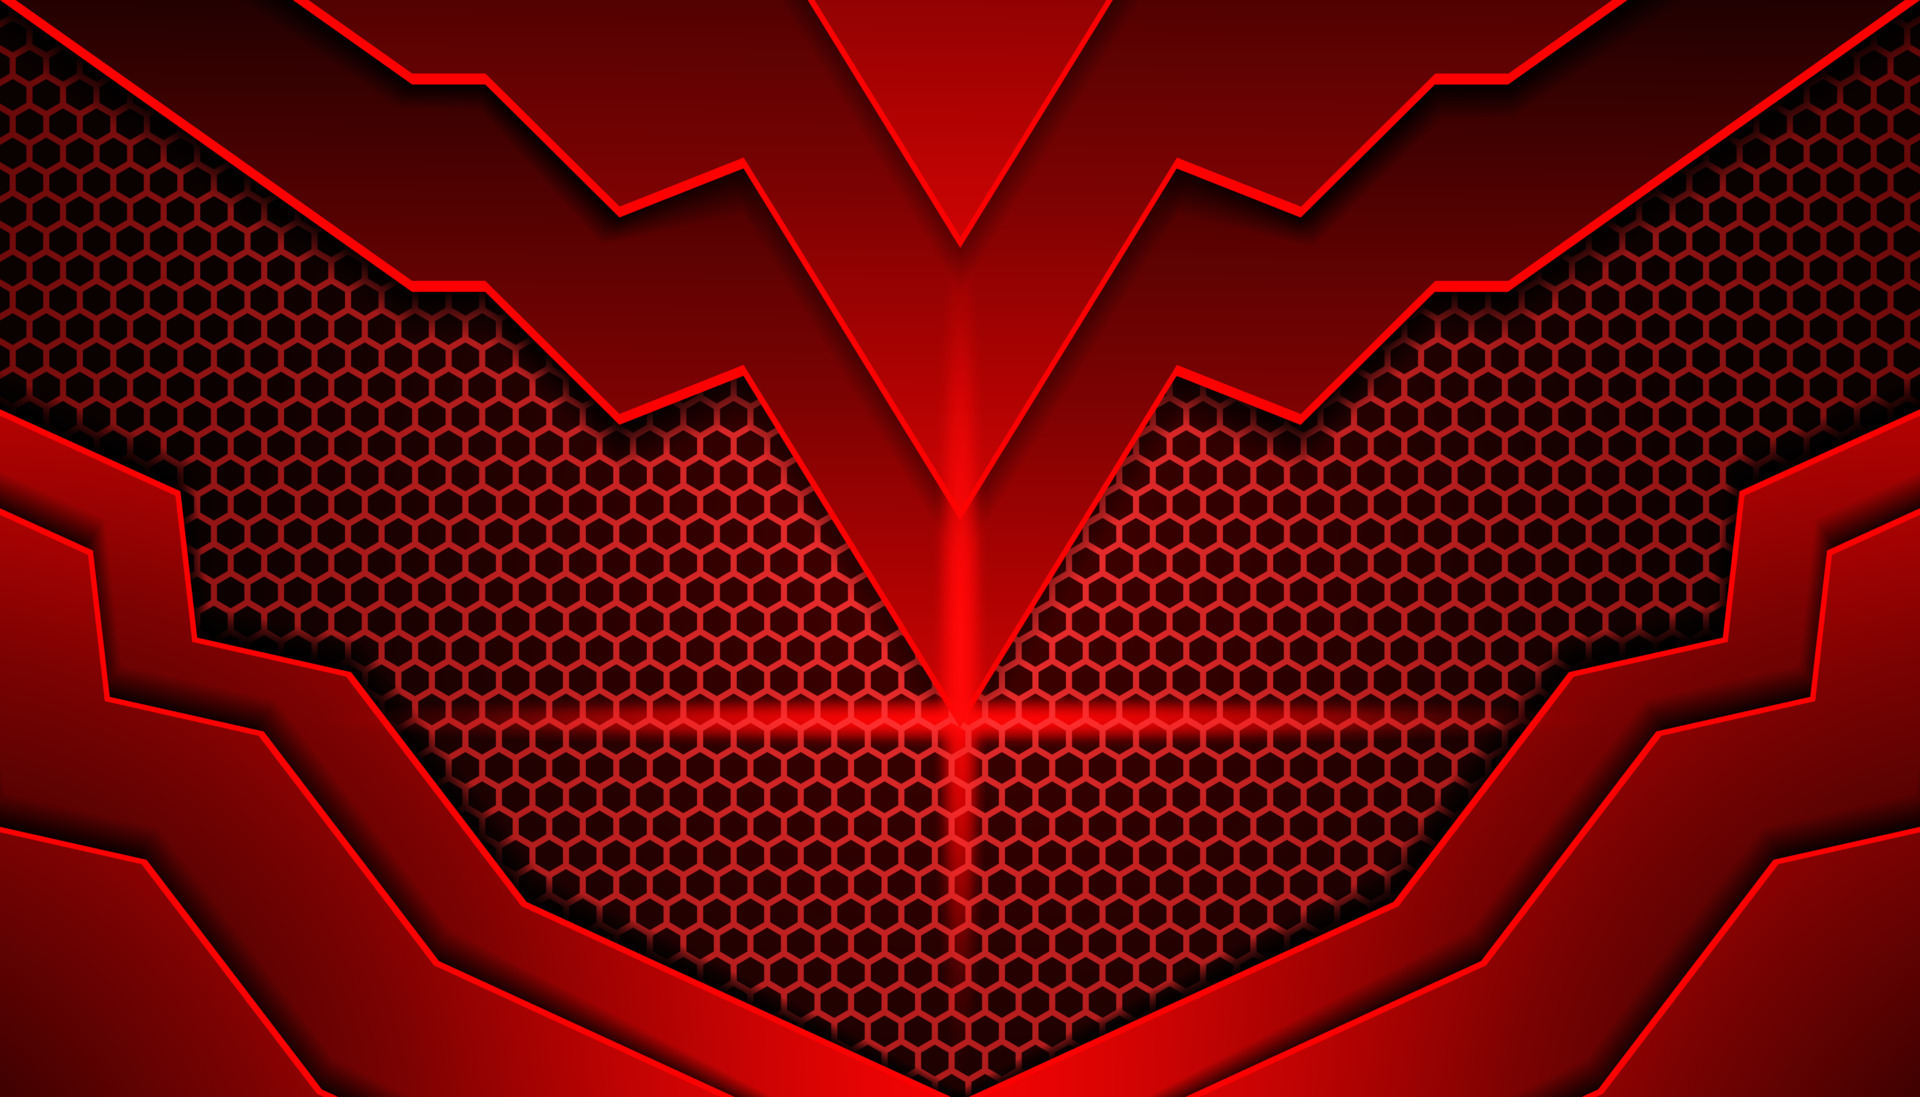 Giới game thủ đang rất mê mẩn những hình nền game đỏ đen hiện đại với hình lục giác. Với sự hài hòa giữa màu đen, màu đỏ và hình dạng lục giác độc đáo, bạn sẽ có được 1 màn hình độc đáo và đẹp mắt để trang trí chiếc máy tính của mình. Hãy khám phá những hình nền game đẹp này ngay bây giờ!